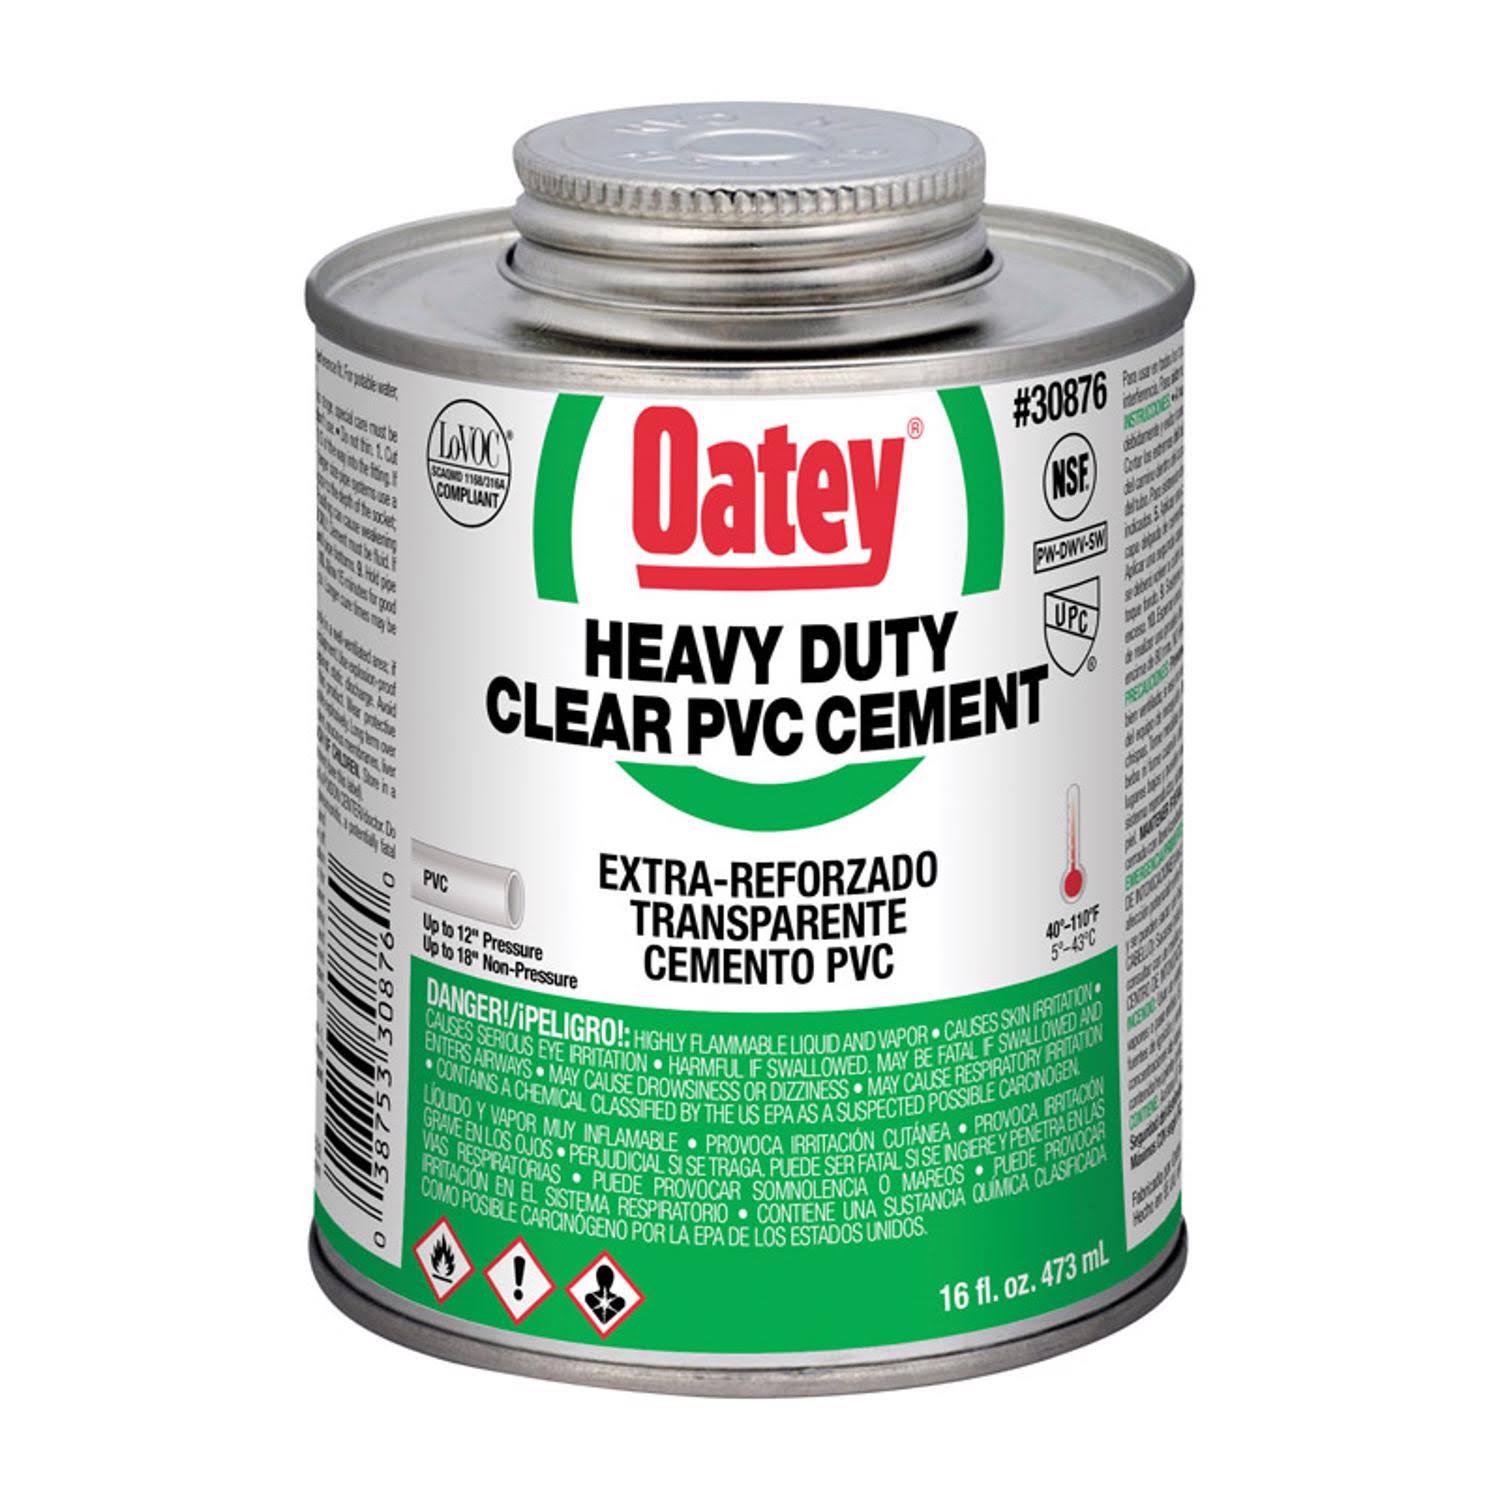 Oatey Heavy Duty PVC Cement - Clear, 473ml